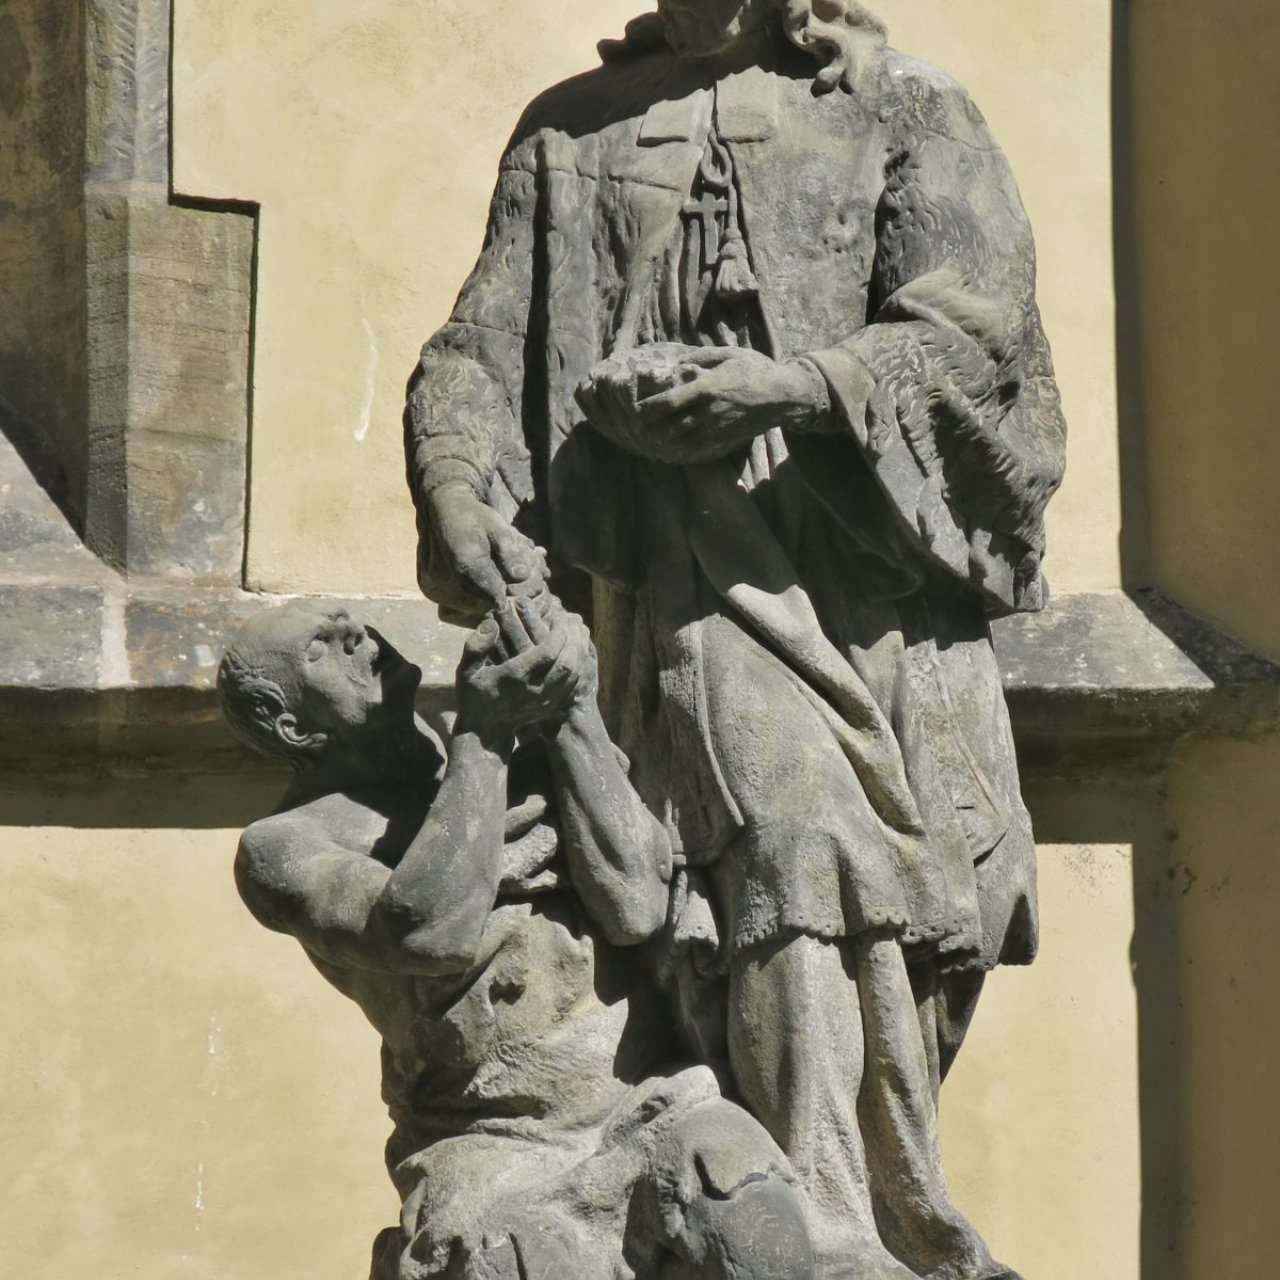 Praha (Staré Město) – sousoší sv. Jana Nepomuckého almužníka